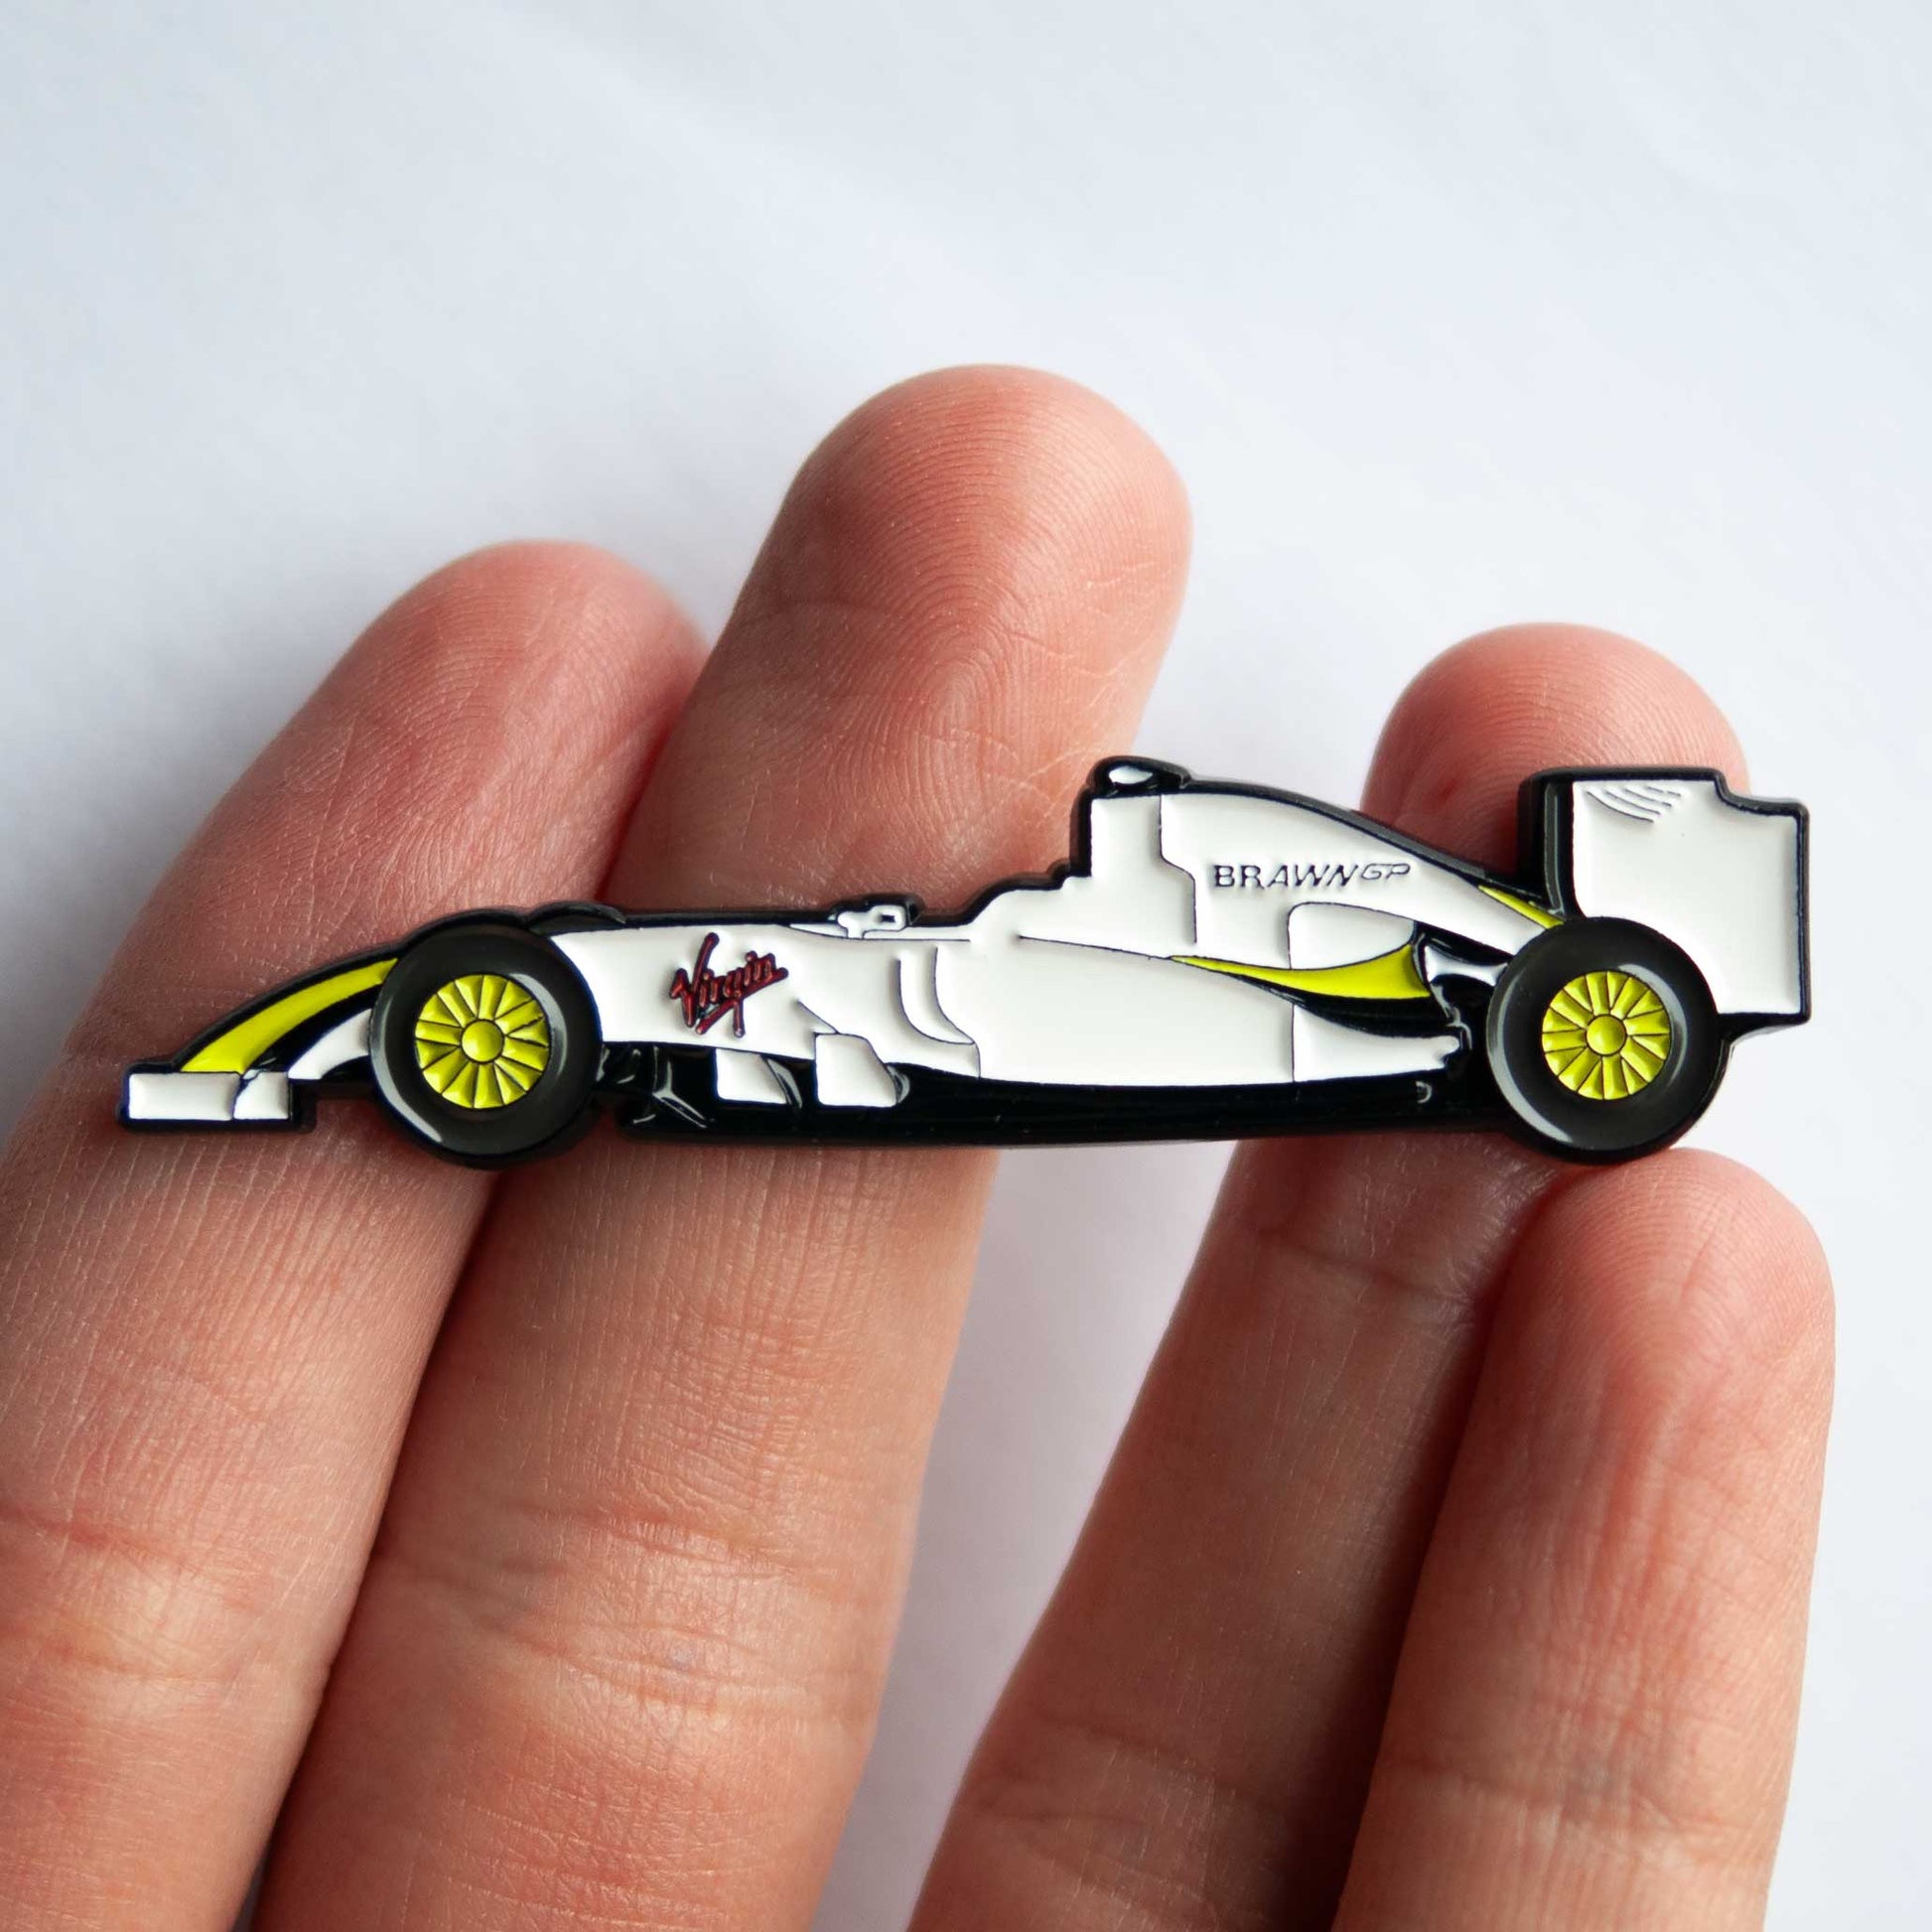 Brawn BGP 001 Formula One Car Enamel Pin shown on hand